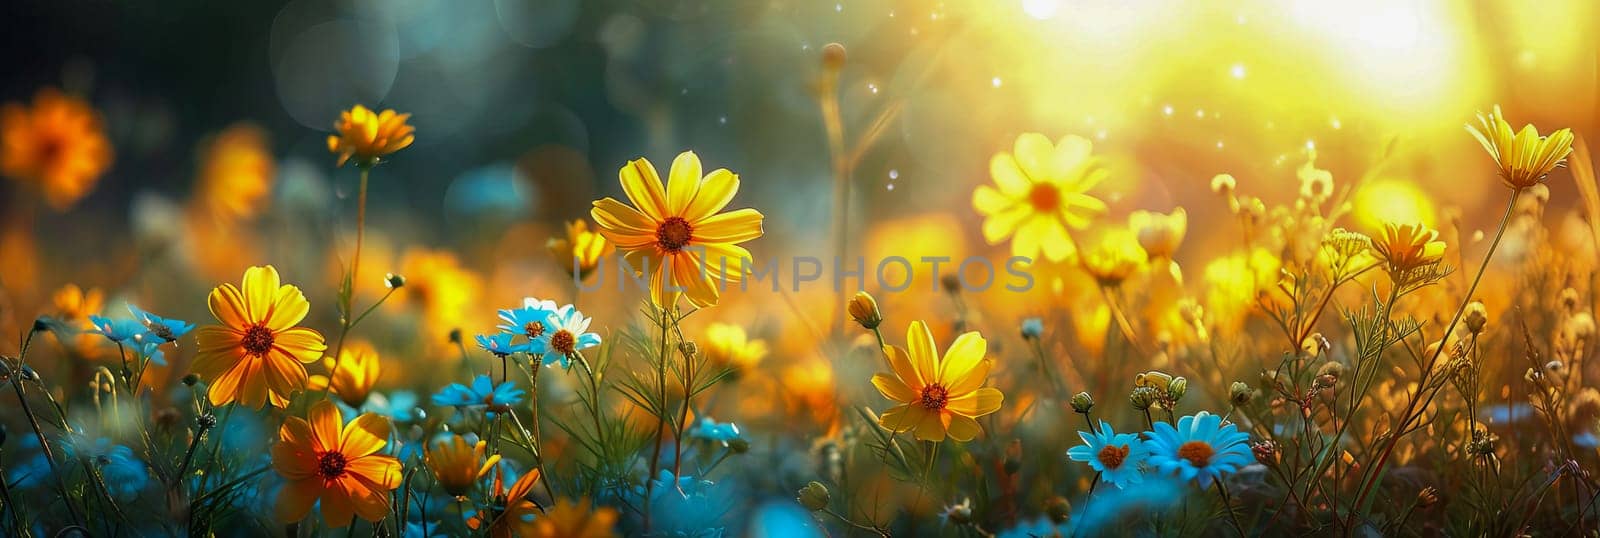 Banner summer wildflowers in a meadow in sunlight. by OlgaGubskaya